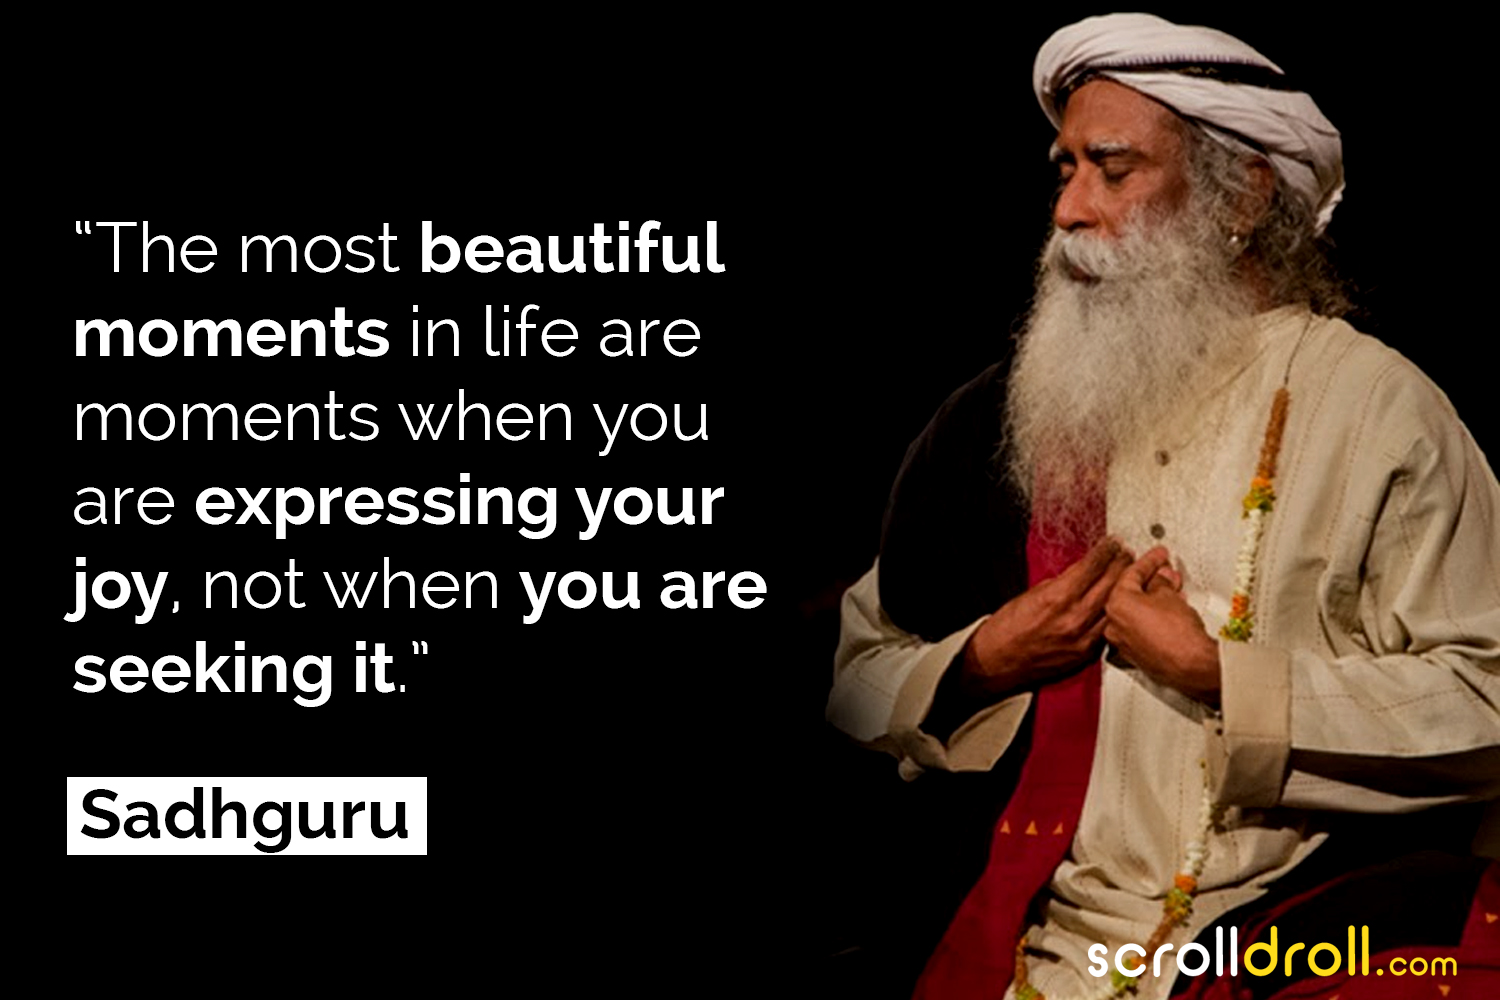 20 Best Sadhguru Quotes That Will Awaken You Spiritually